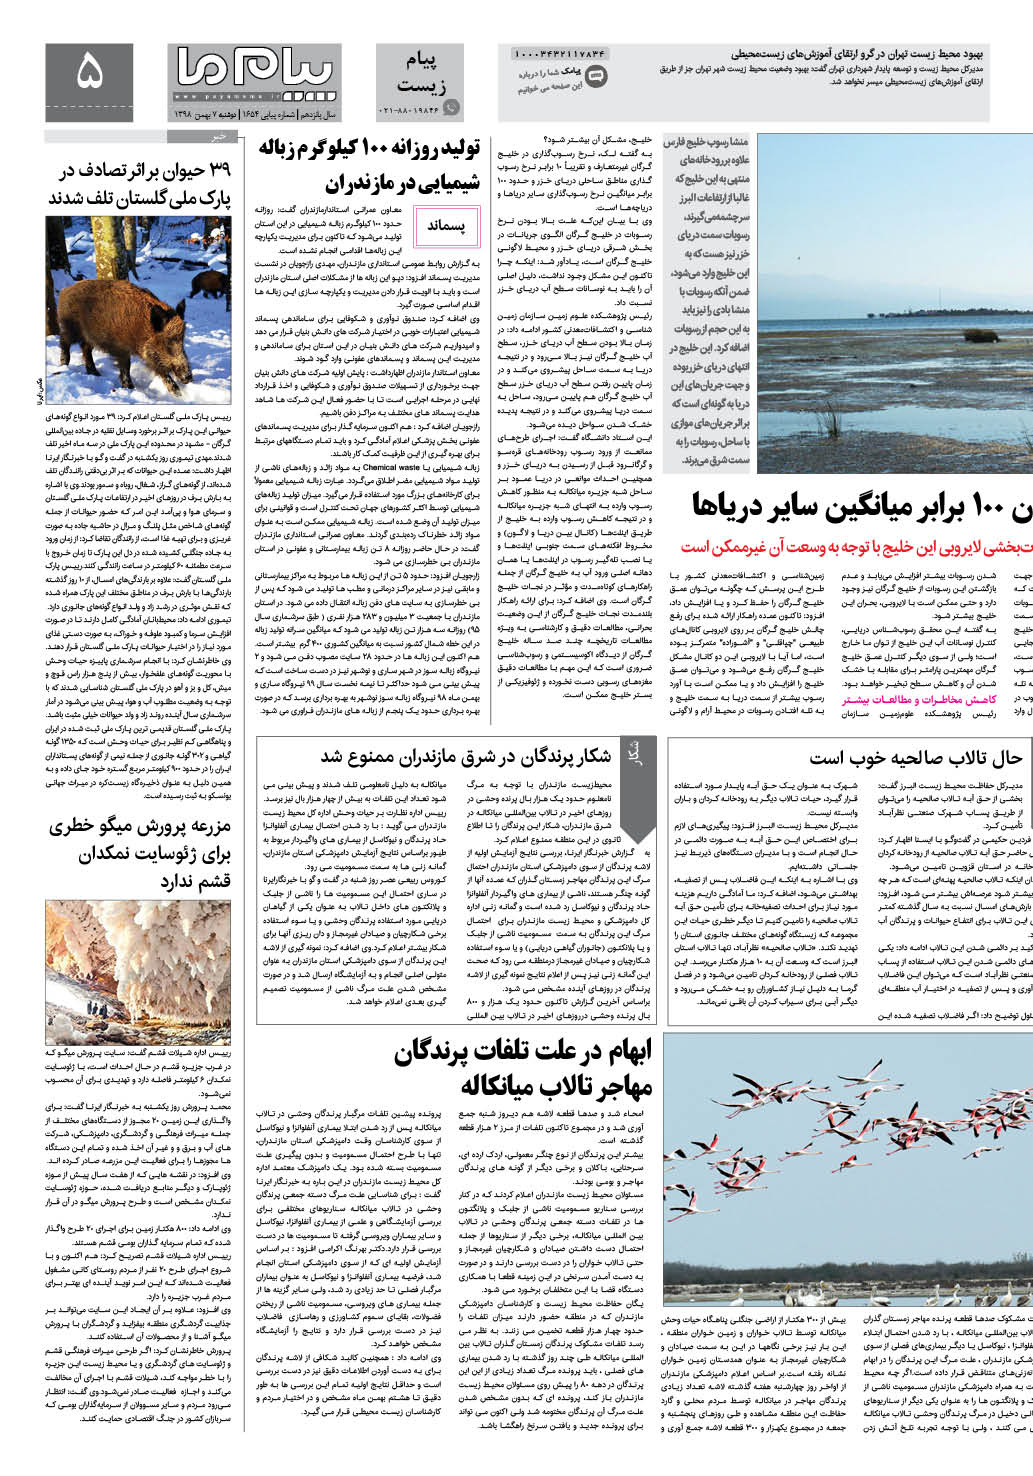 صفحه پیام زیست شماره 1654 روزنامه پیام ما